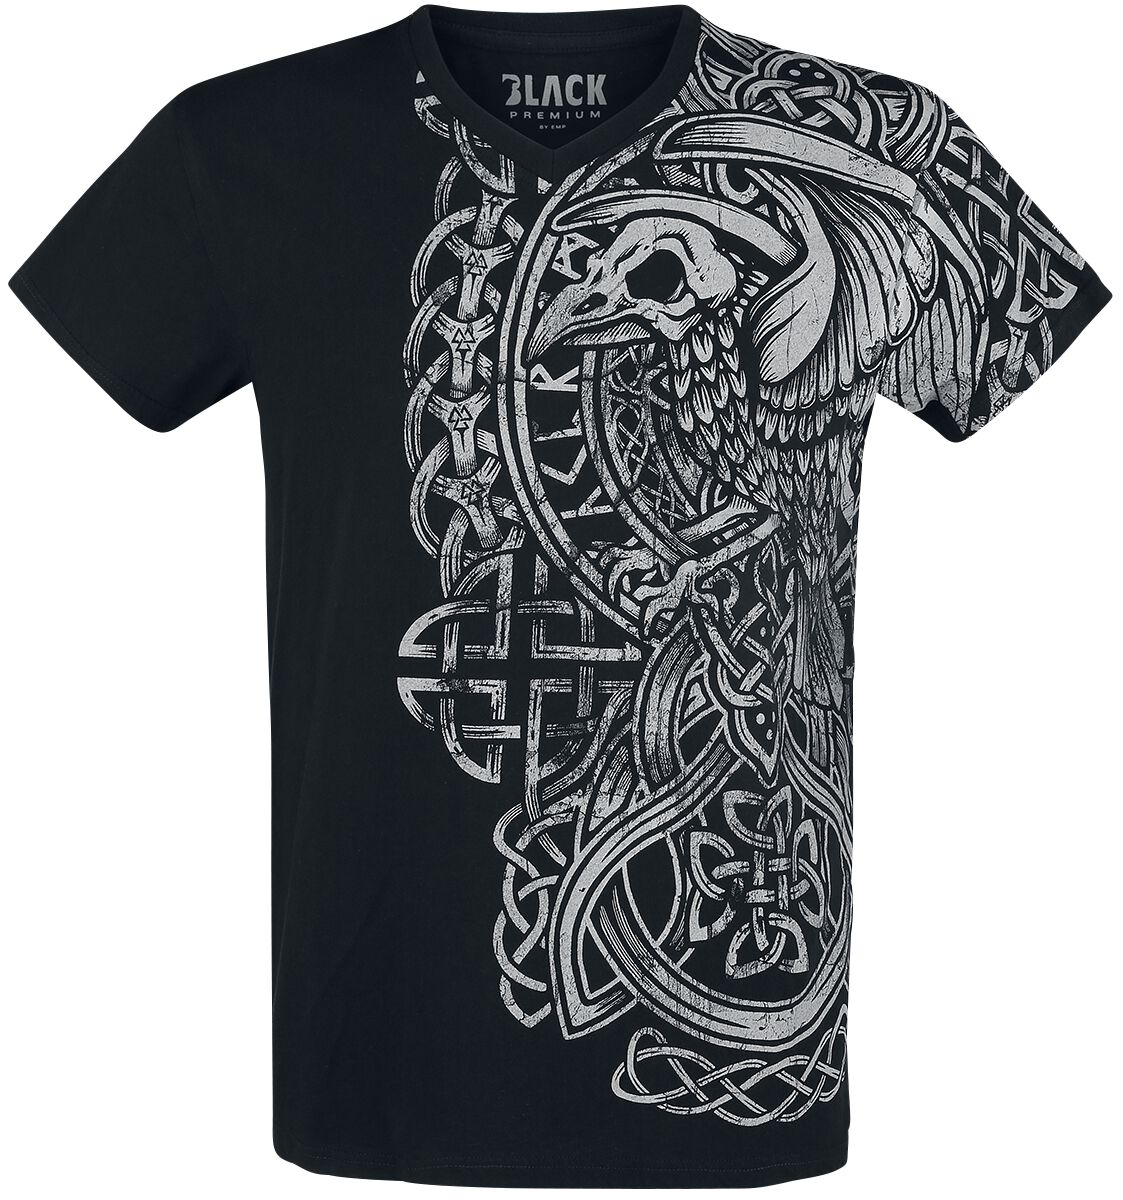 Black Premium by EMP T-Shirt - schwarzes T-Shirt mit Print und V-Ausschnitt - S bis 5XL - für Männer - Größe XL - schwarz